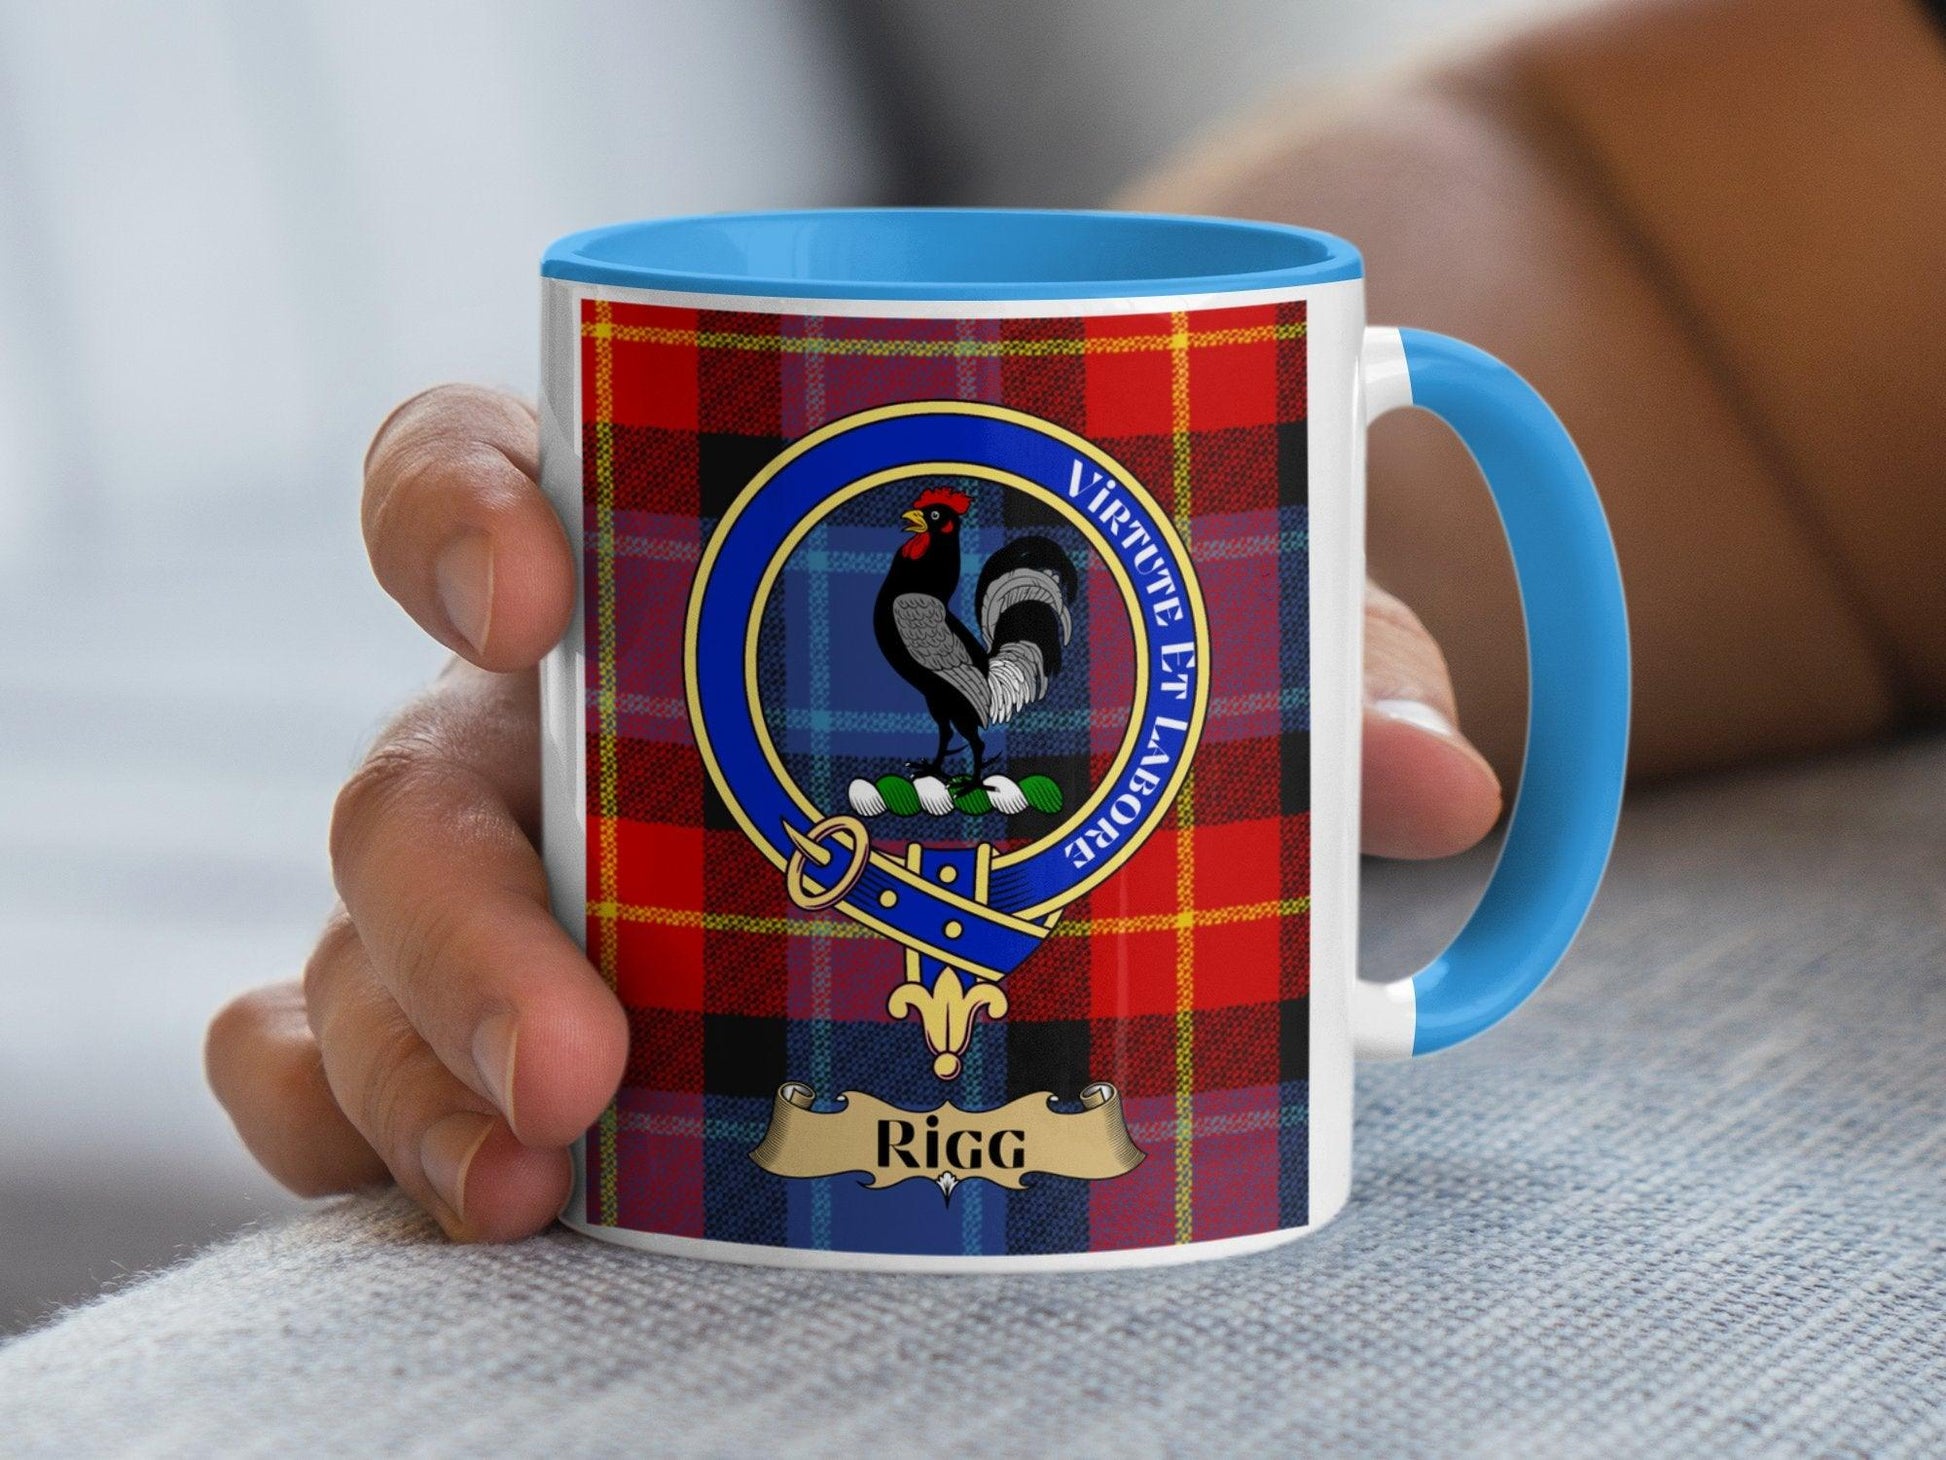 Rigg Scottish Clan Crest Tartan Pattern Mug - Living Stone Gifts